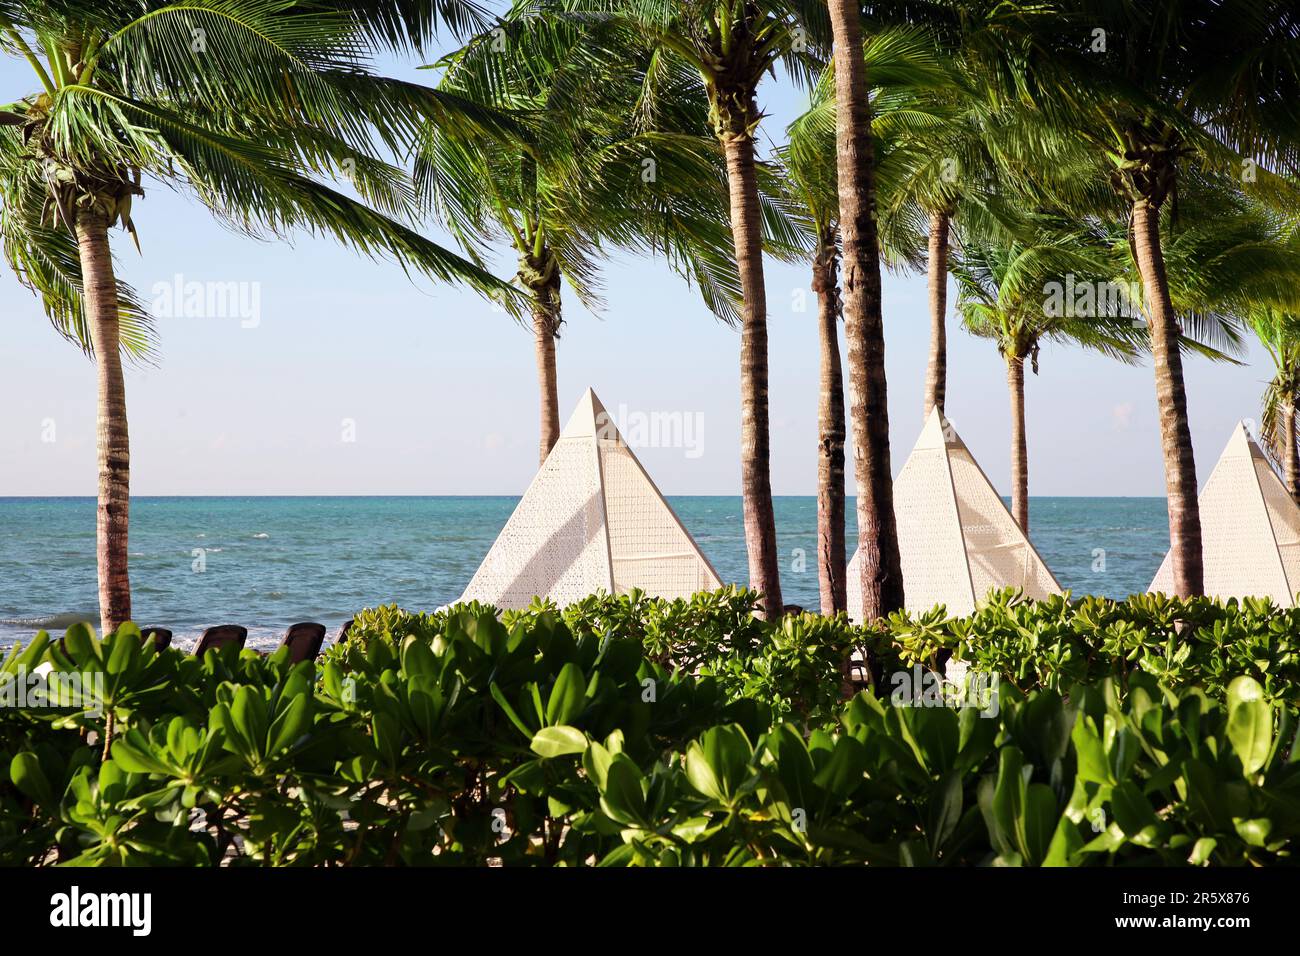 Hermosas palmeras con hojas verdes cerca del mar Foto de stock